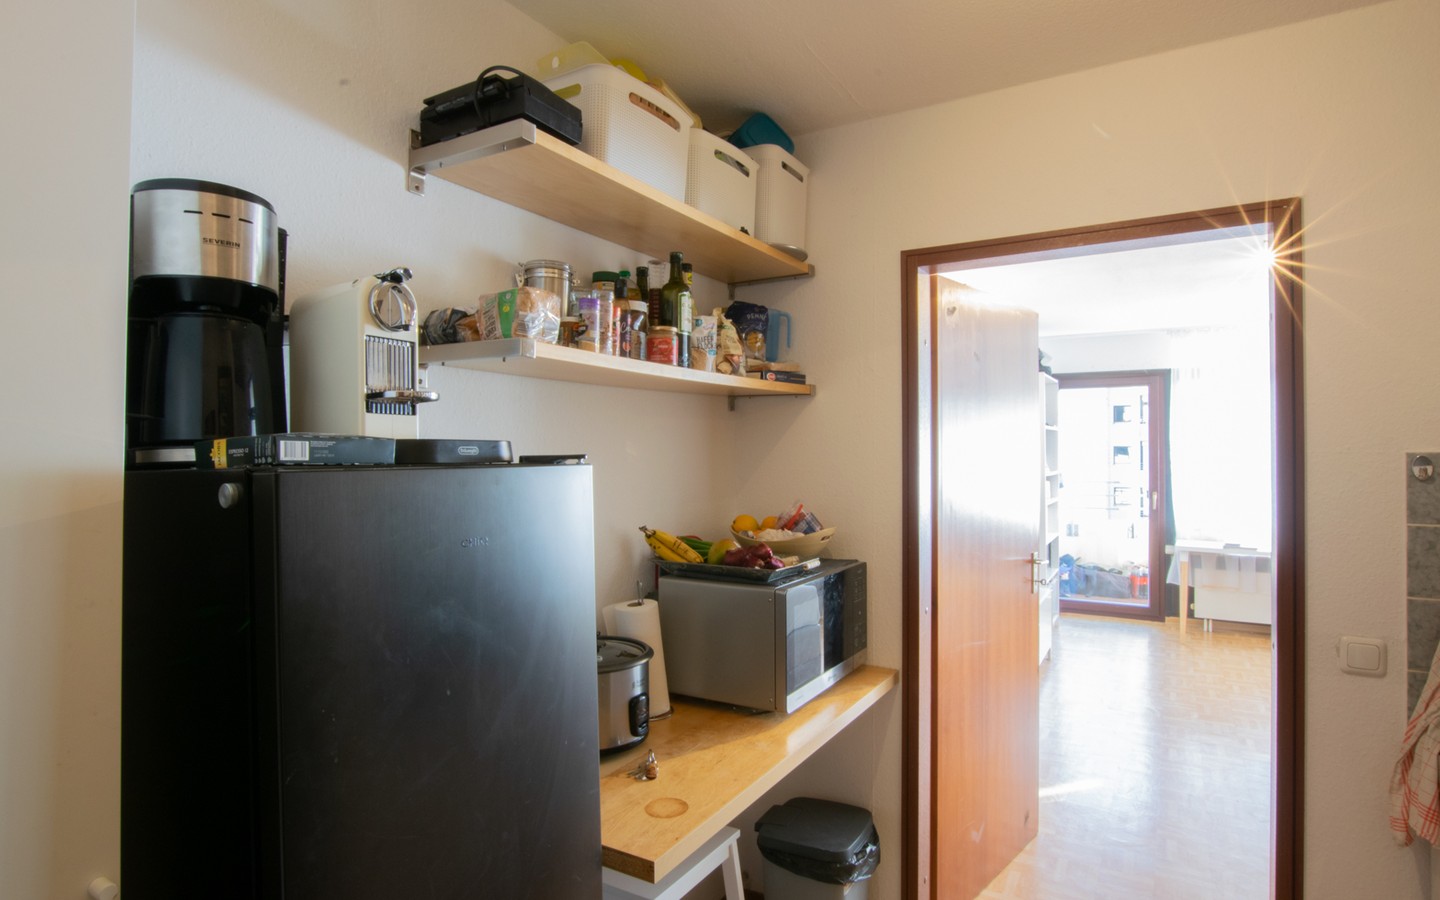 Diele - Handschuhsheim: Vermietete 1-Zimmer-Wohnung mit Loggia und TG-Stellplatz in attraktiver Lage